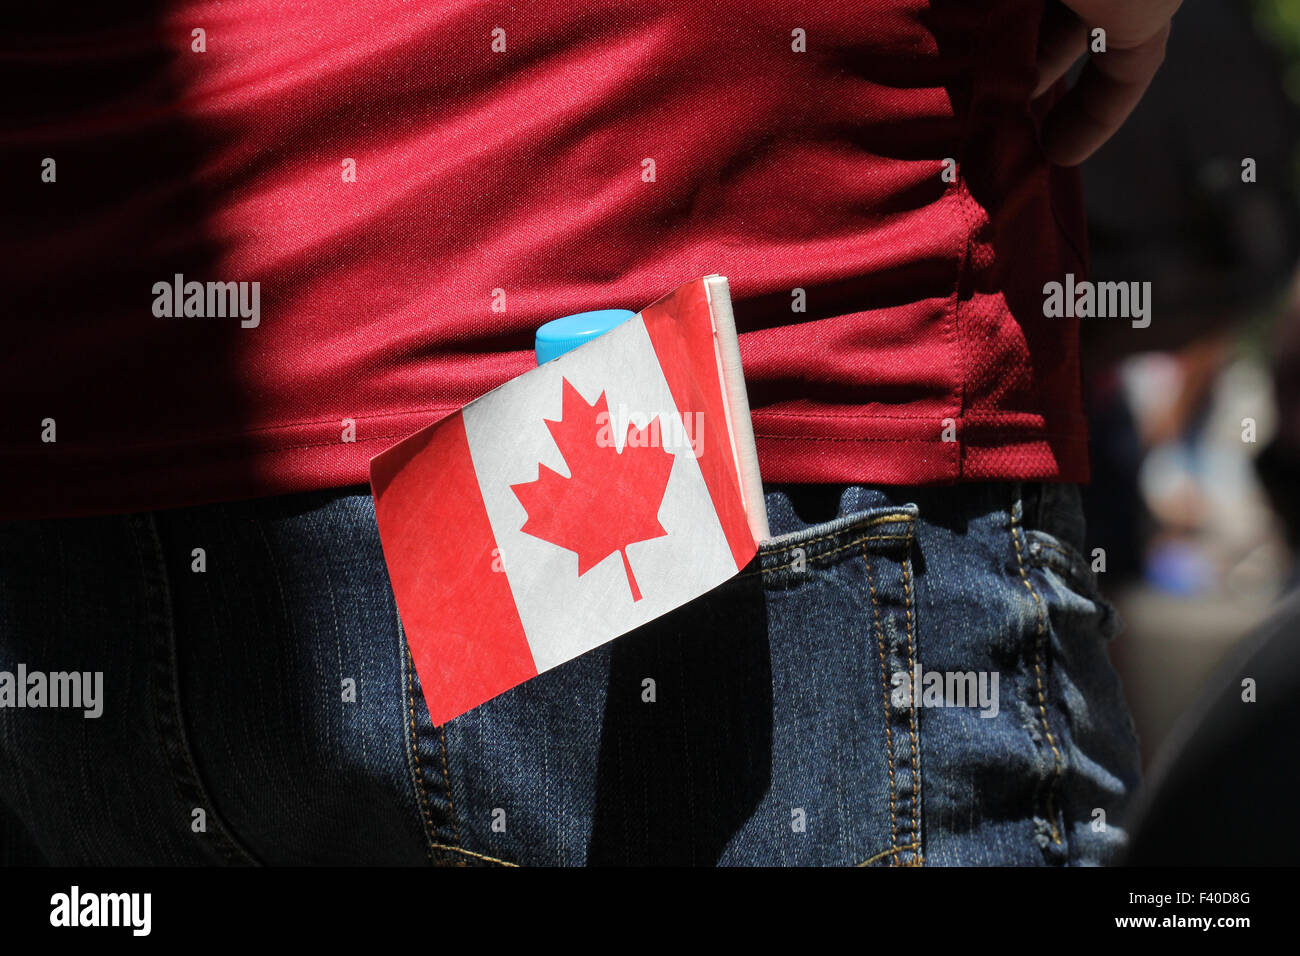 Eine Person trägt ein rotes Hemd und Jeans mit kanadischen Flagge in der Tasche. Stockfoto